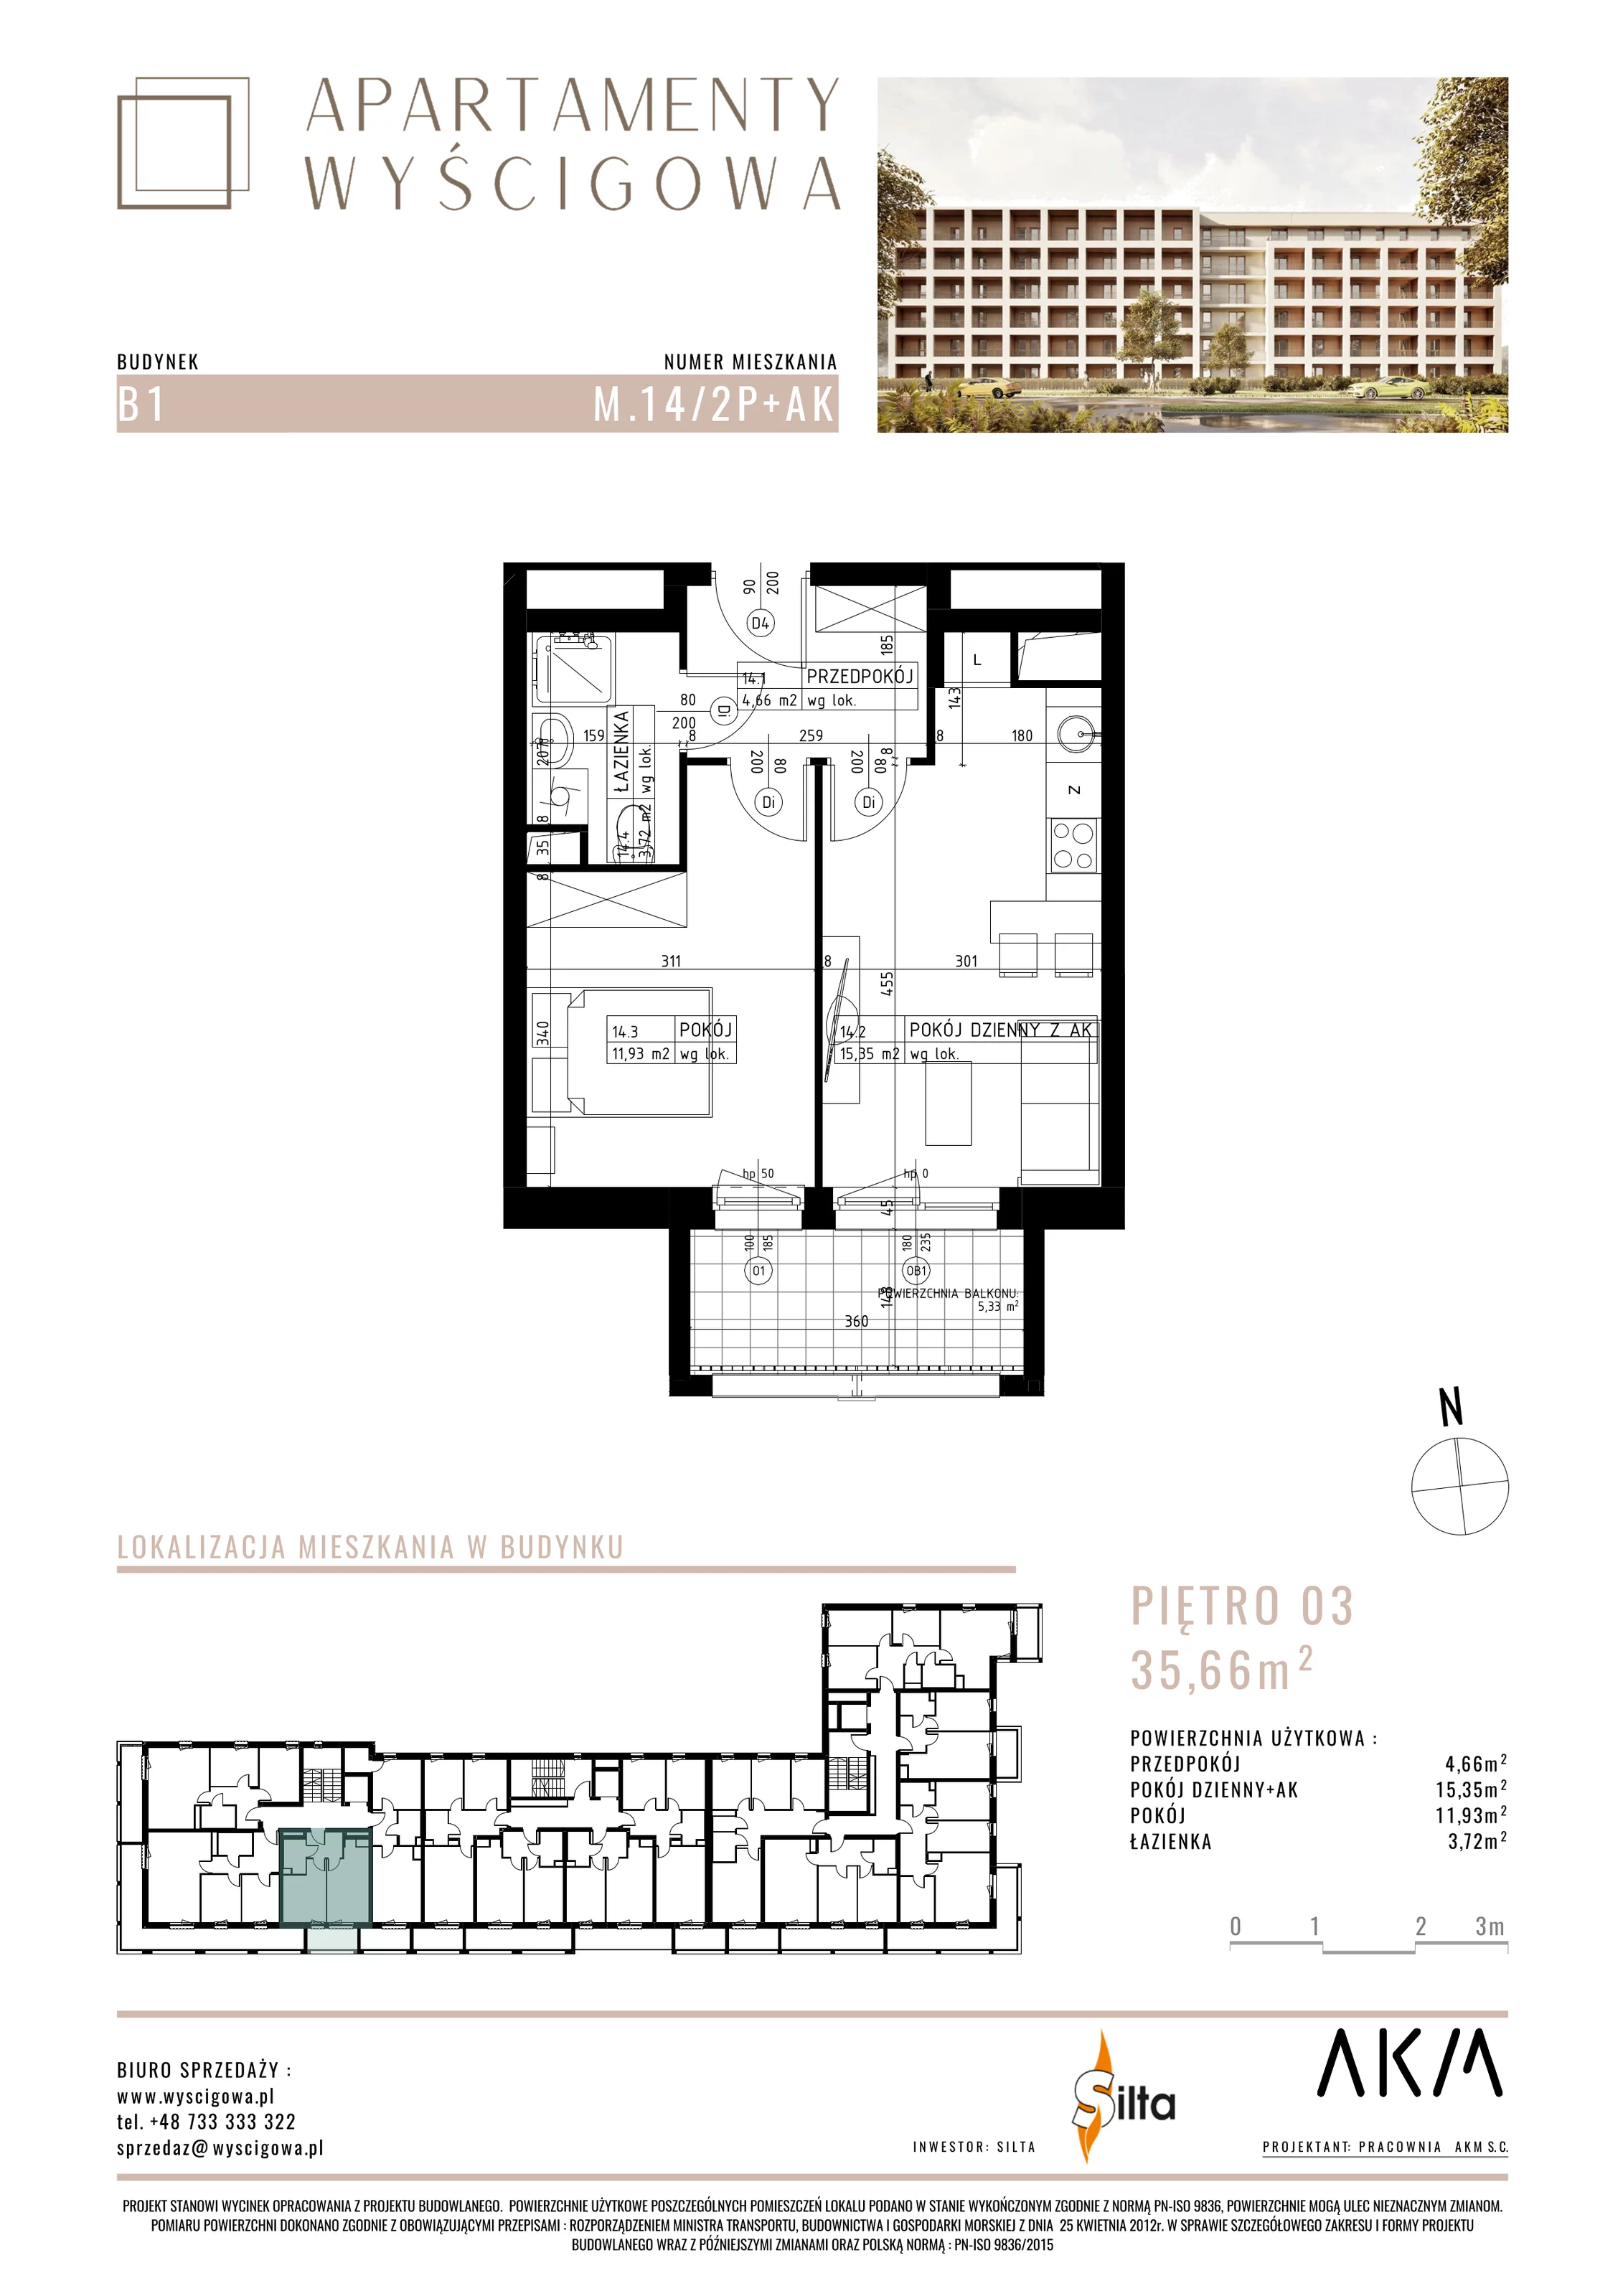 Mieszkanie 35,66 m², piętro 3, oferta nr B1.M14, Apartamenty Wyścigowa, Lublin, Dziesiąta, Dziesiąta, ul. Wyścigowa